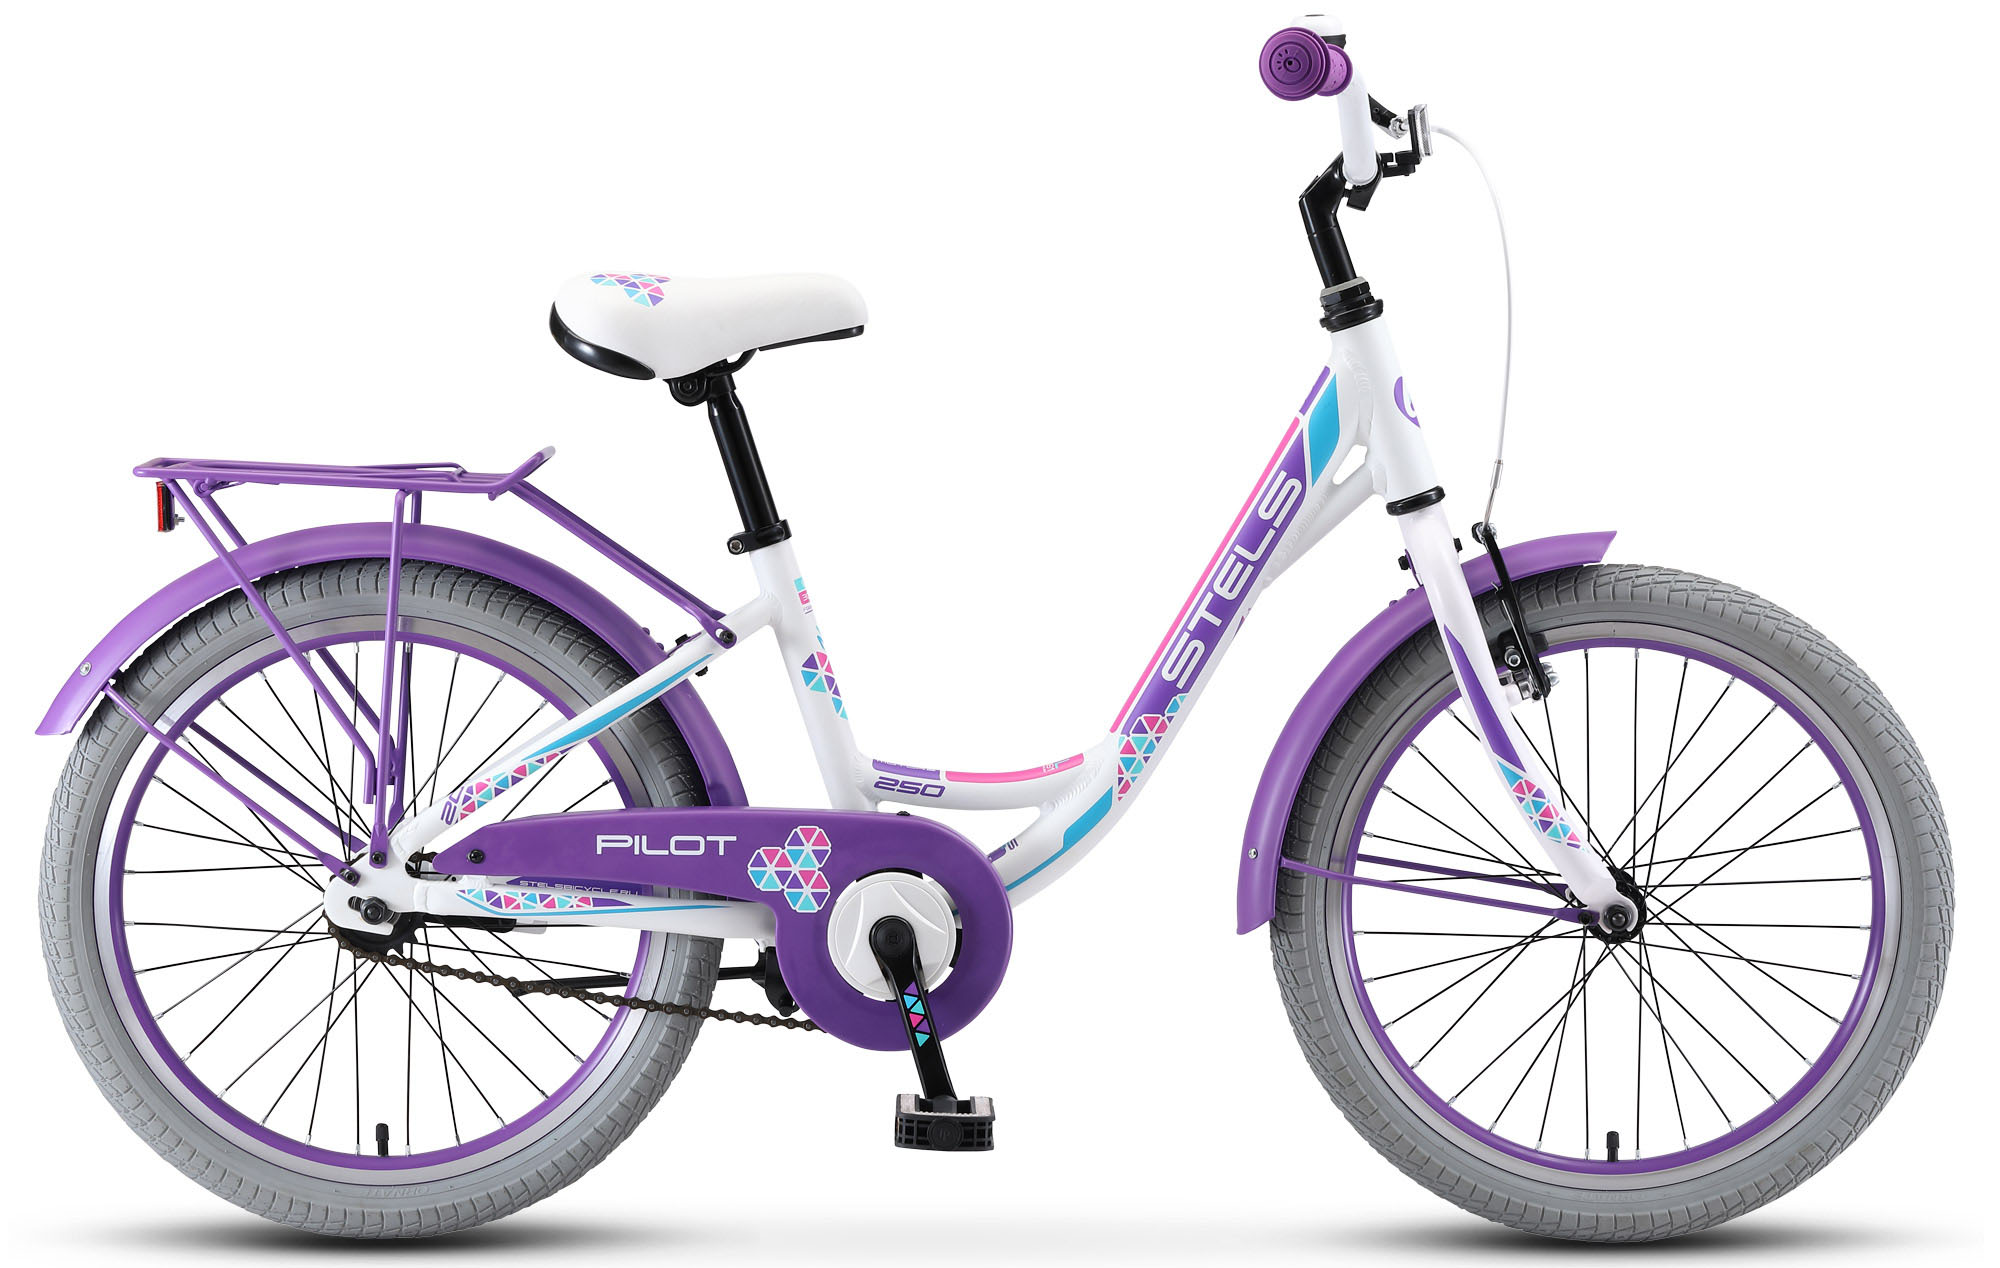  Отзывы о Детском велосипеде Stels Pilot 250 Lady 20 V010 2019